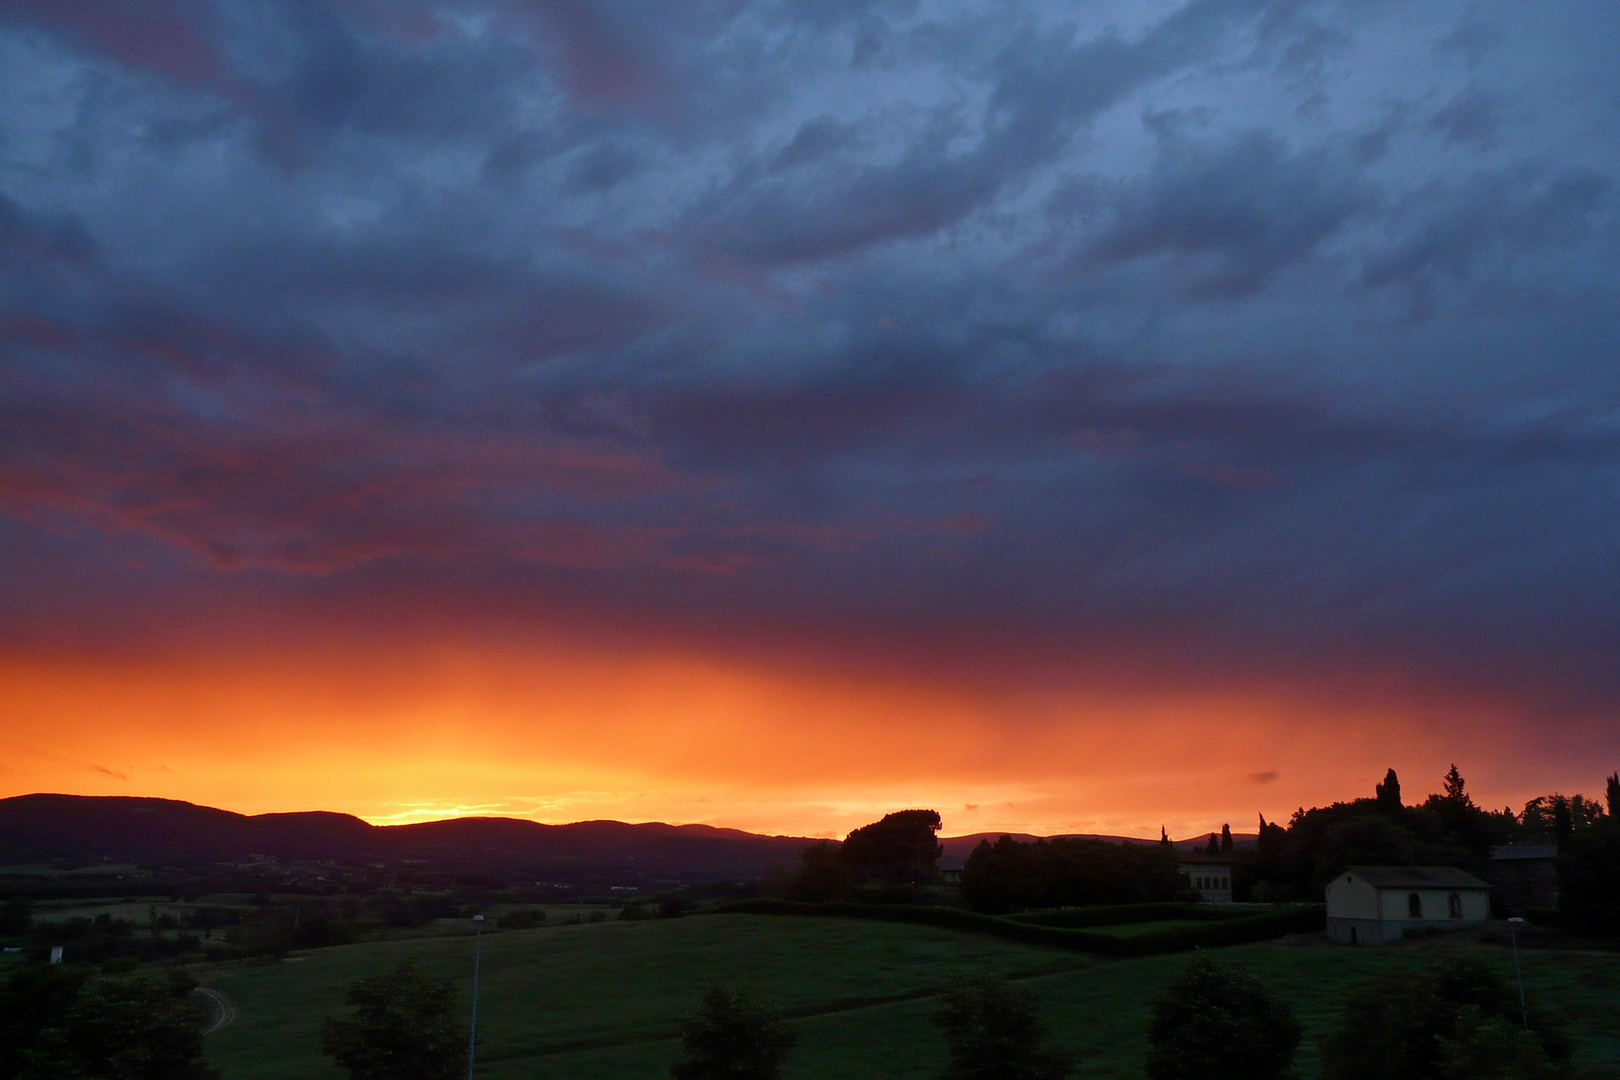 Sonnenuntergang in der Toscana